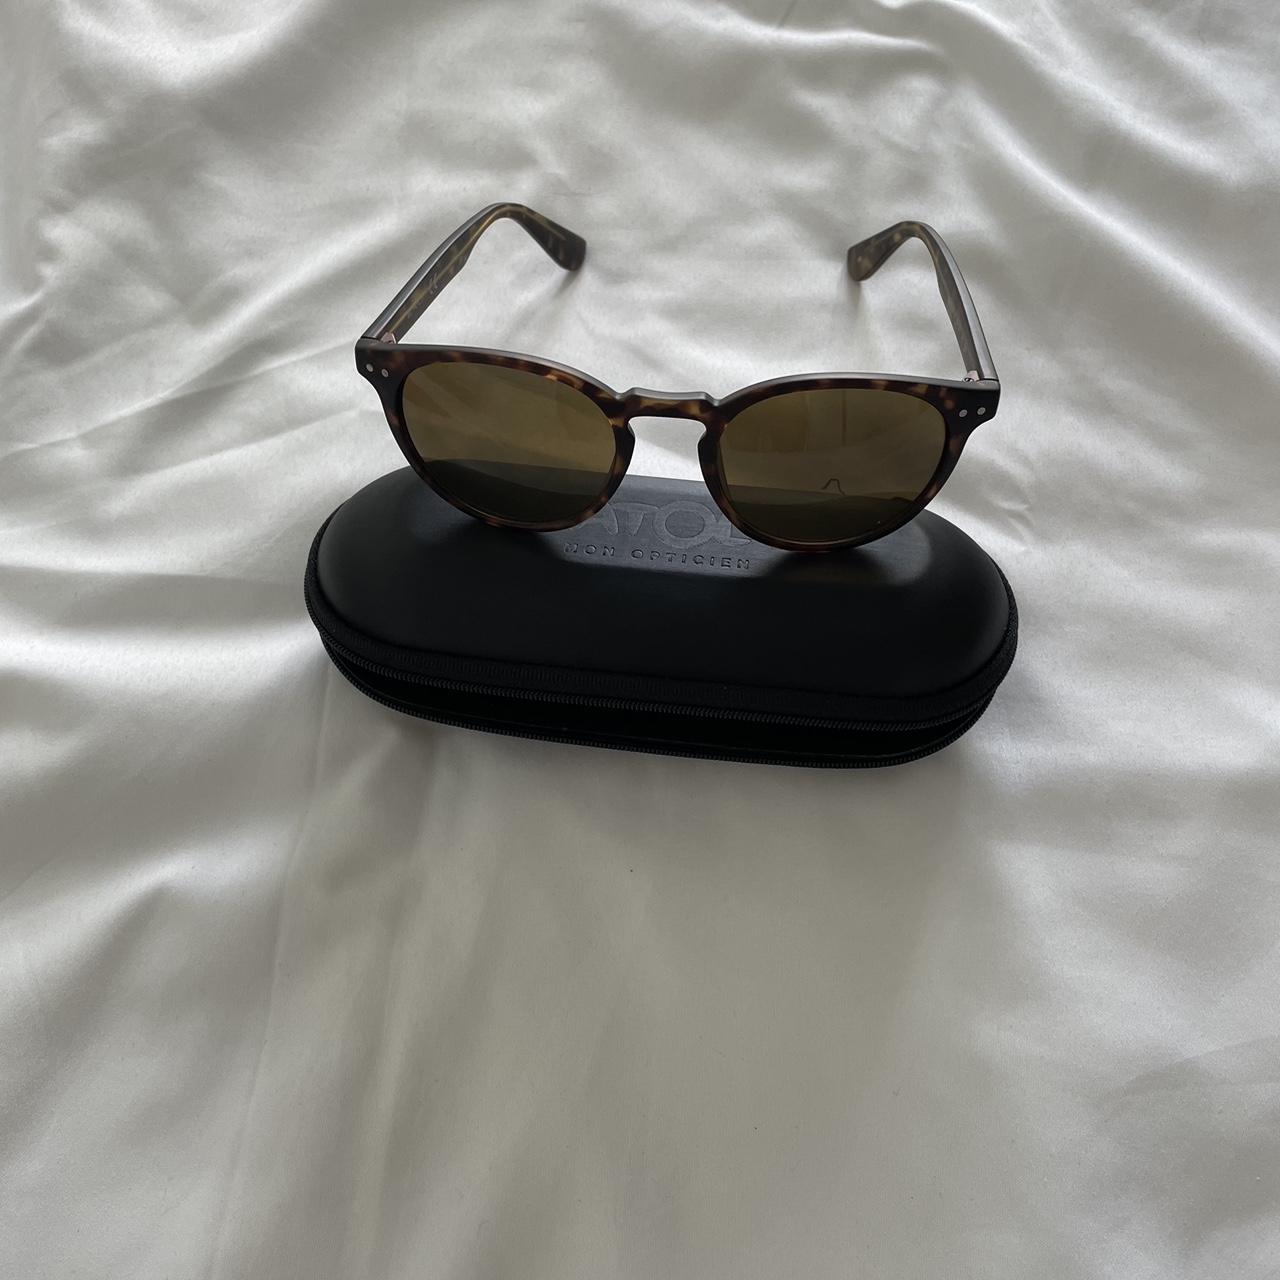 Accessorize Men's Black Sunglasses (2)